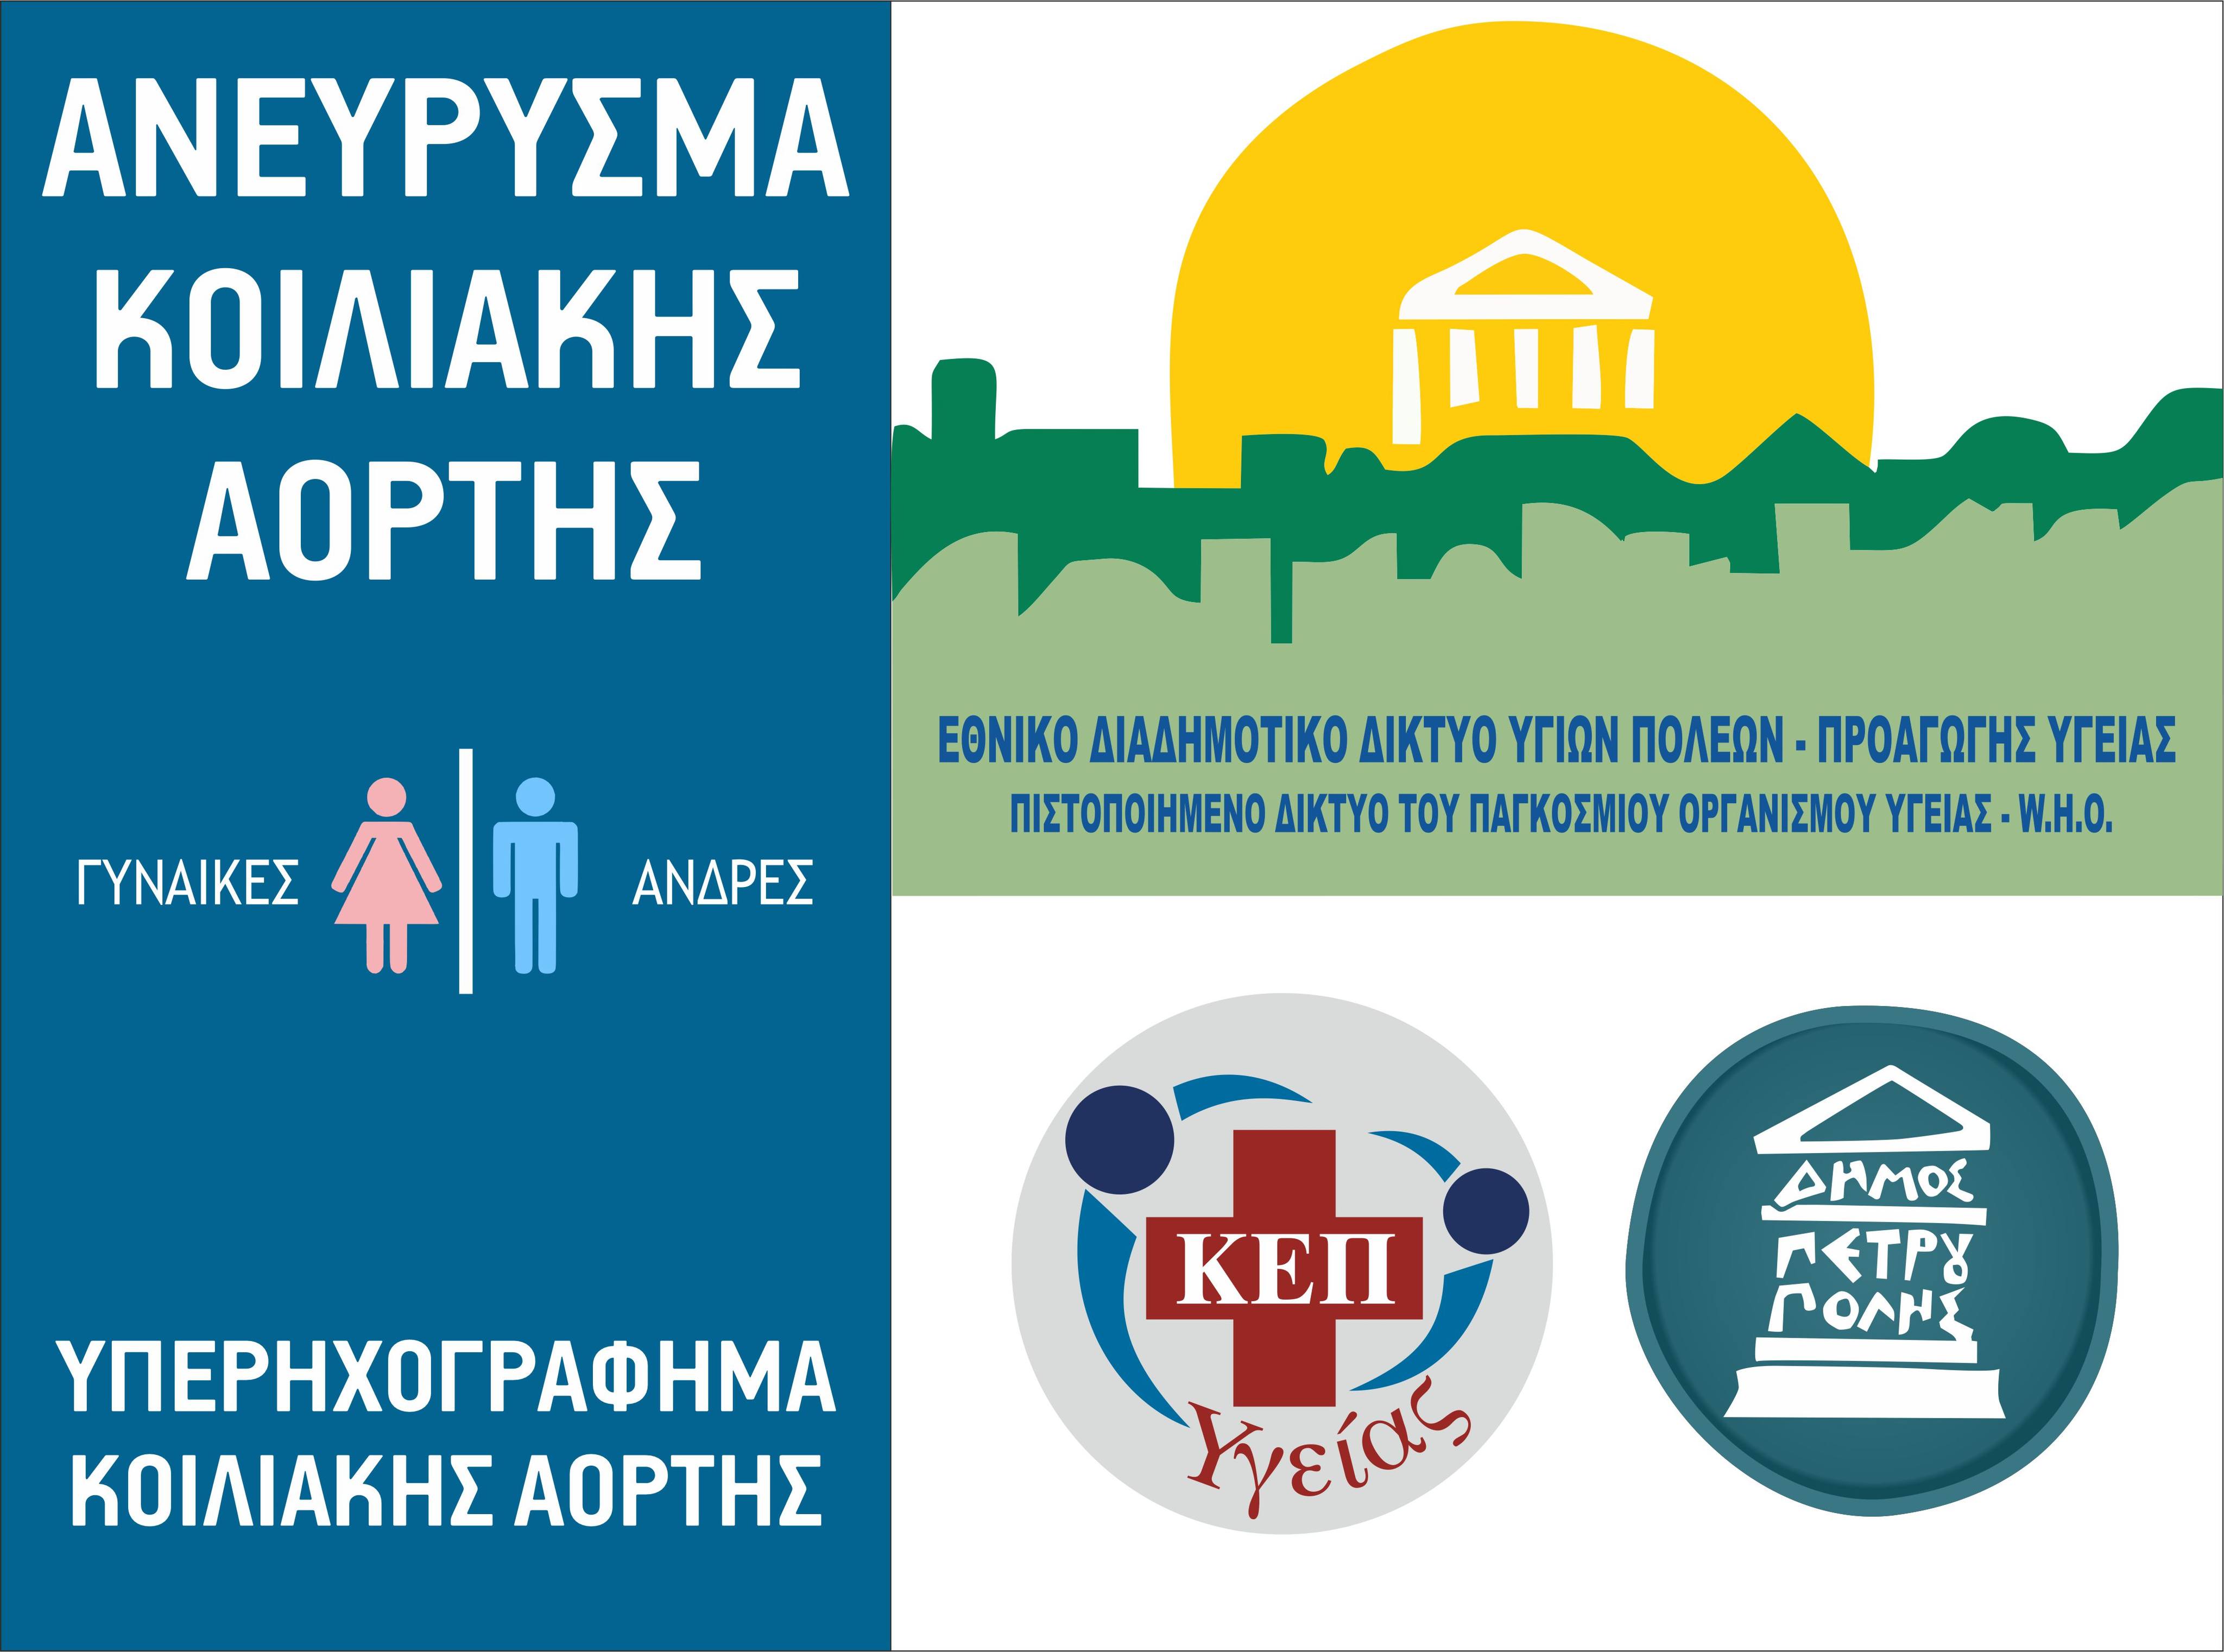 Δήμος Πετρούπολης: Δωρεάν Πρόγραμμα Ελέγχου για Ανεύρυσμα Κοιλιακής Αορτής 